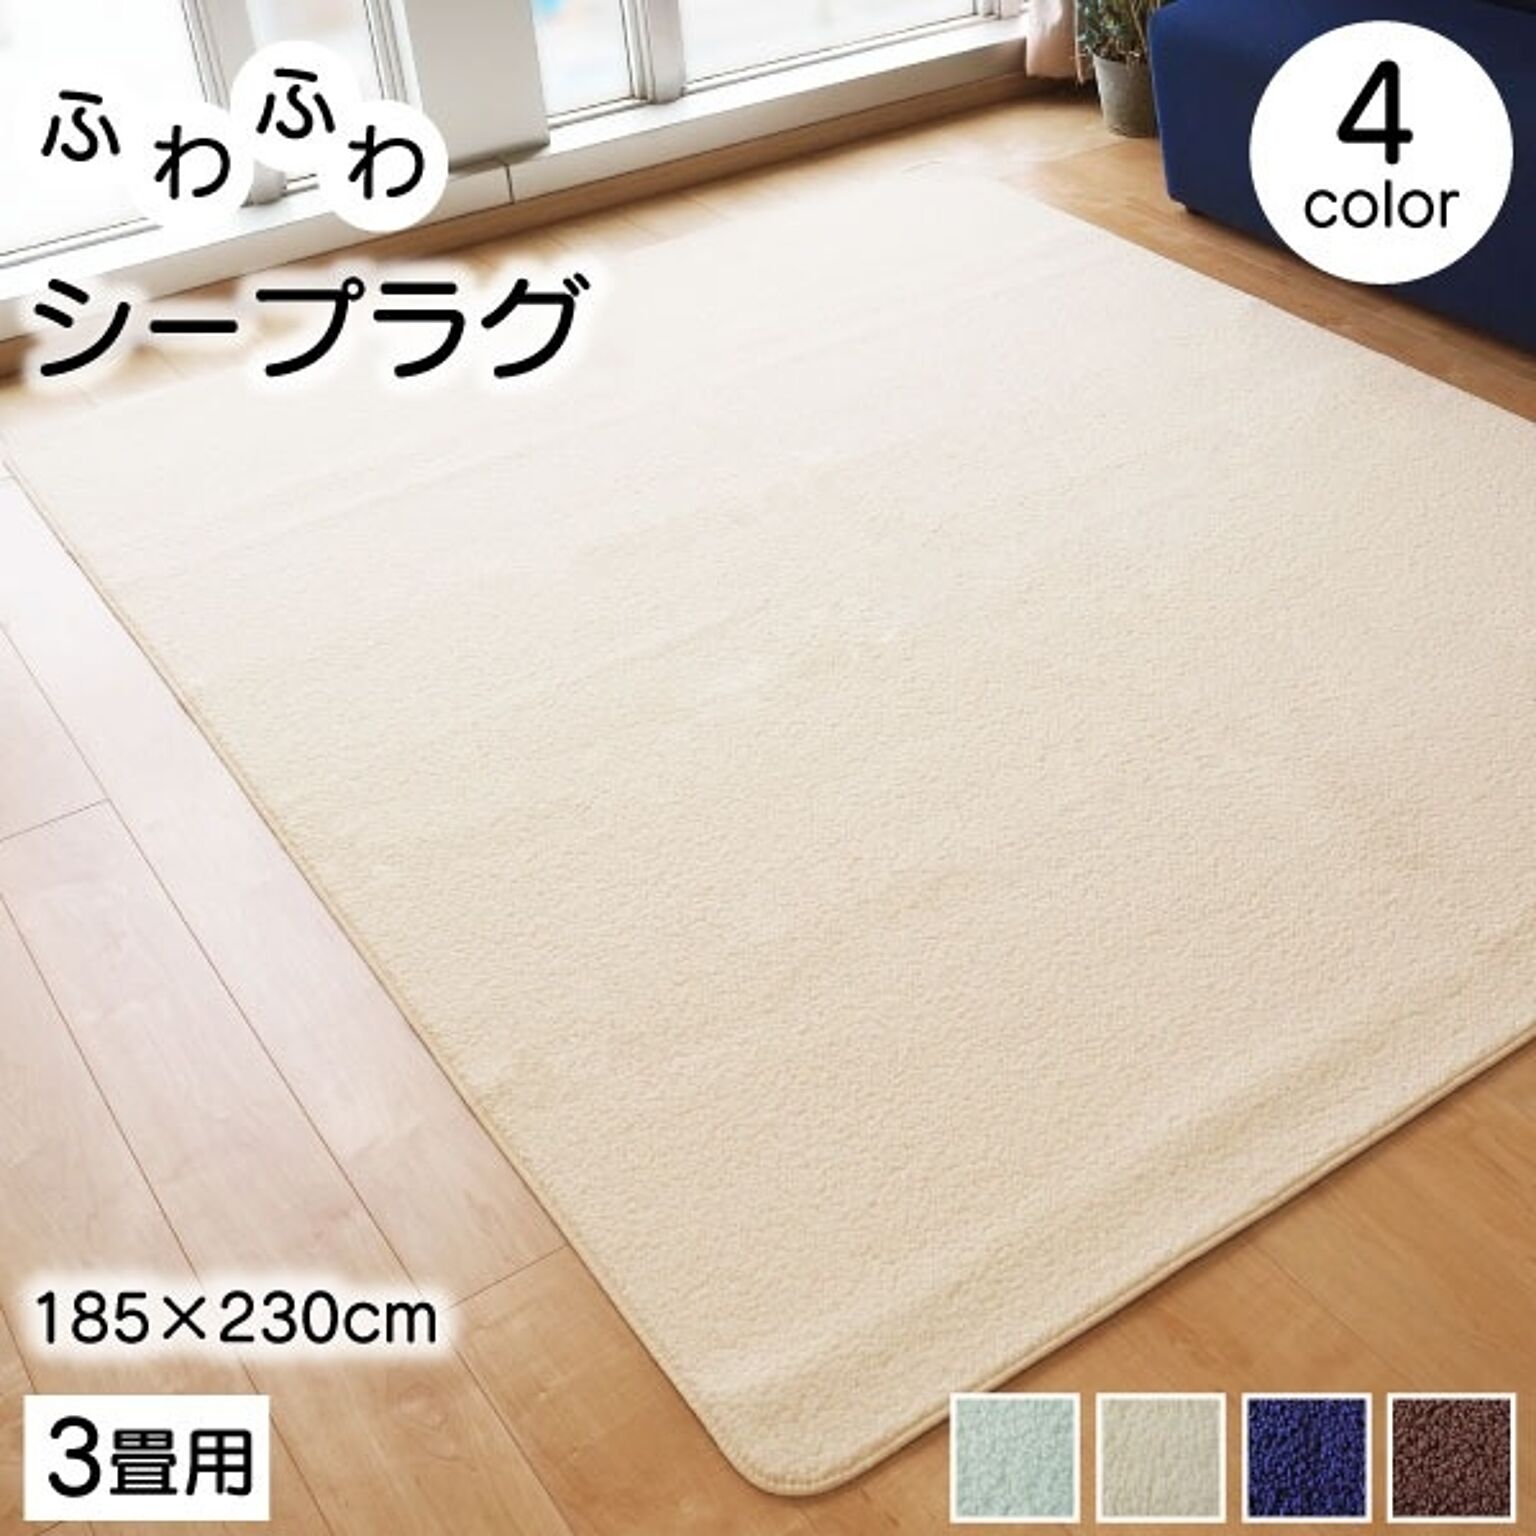 ラグマット 絨毯 約185cm×230cm アイボリー 洗える 軽量 持ち運び簡単 床暖房 ホットカーペット対応 リビング【代引不可】